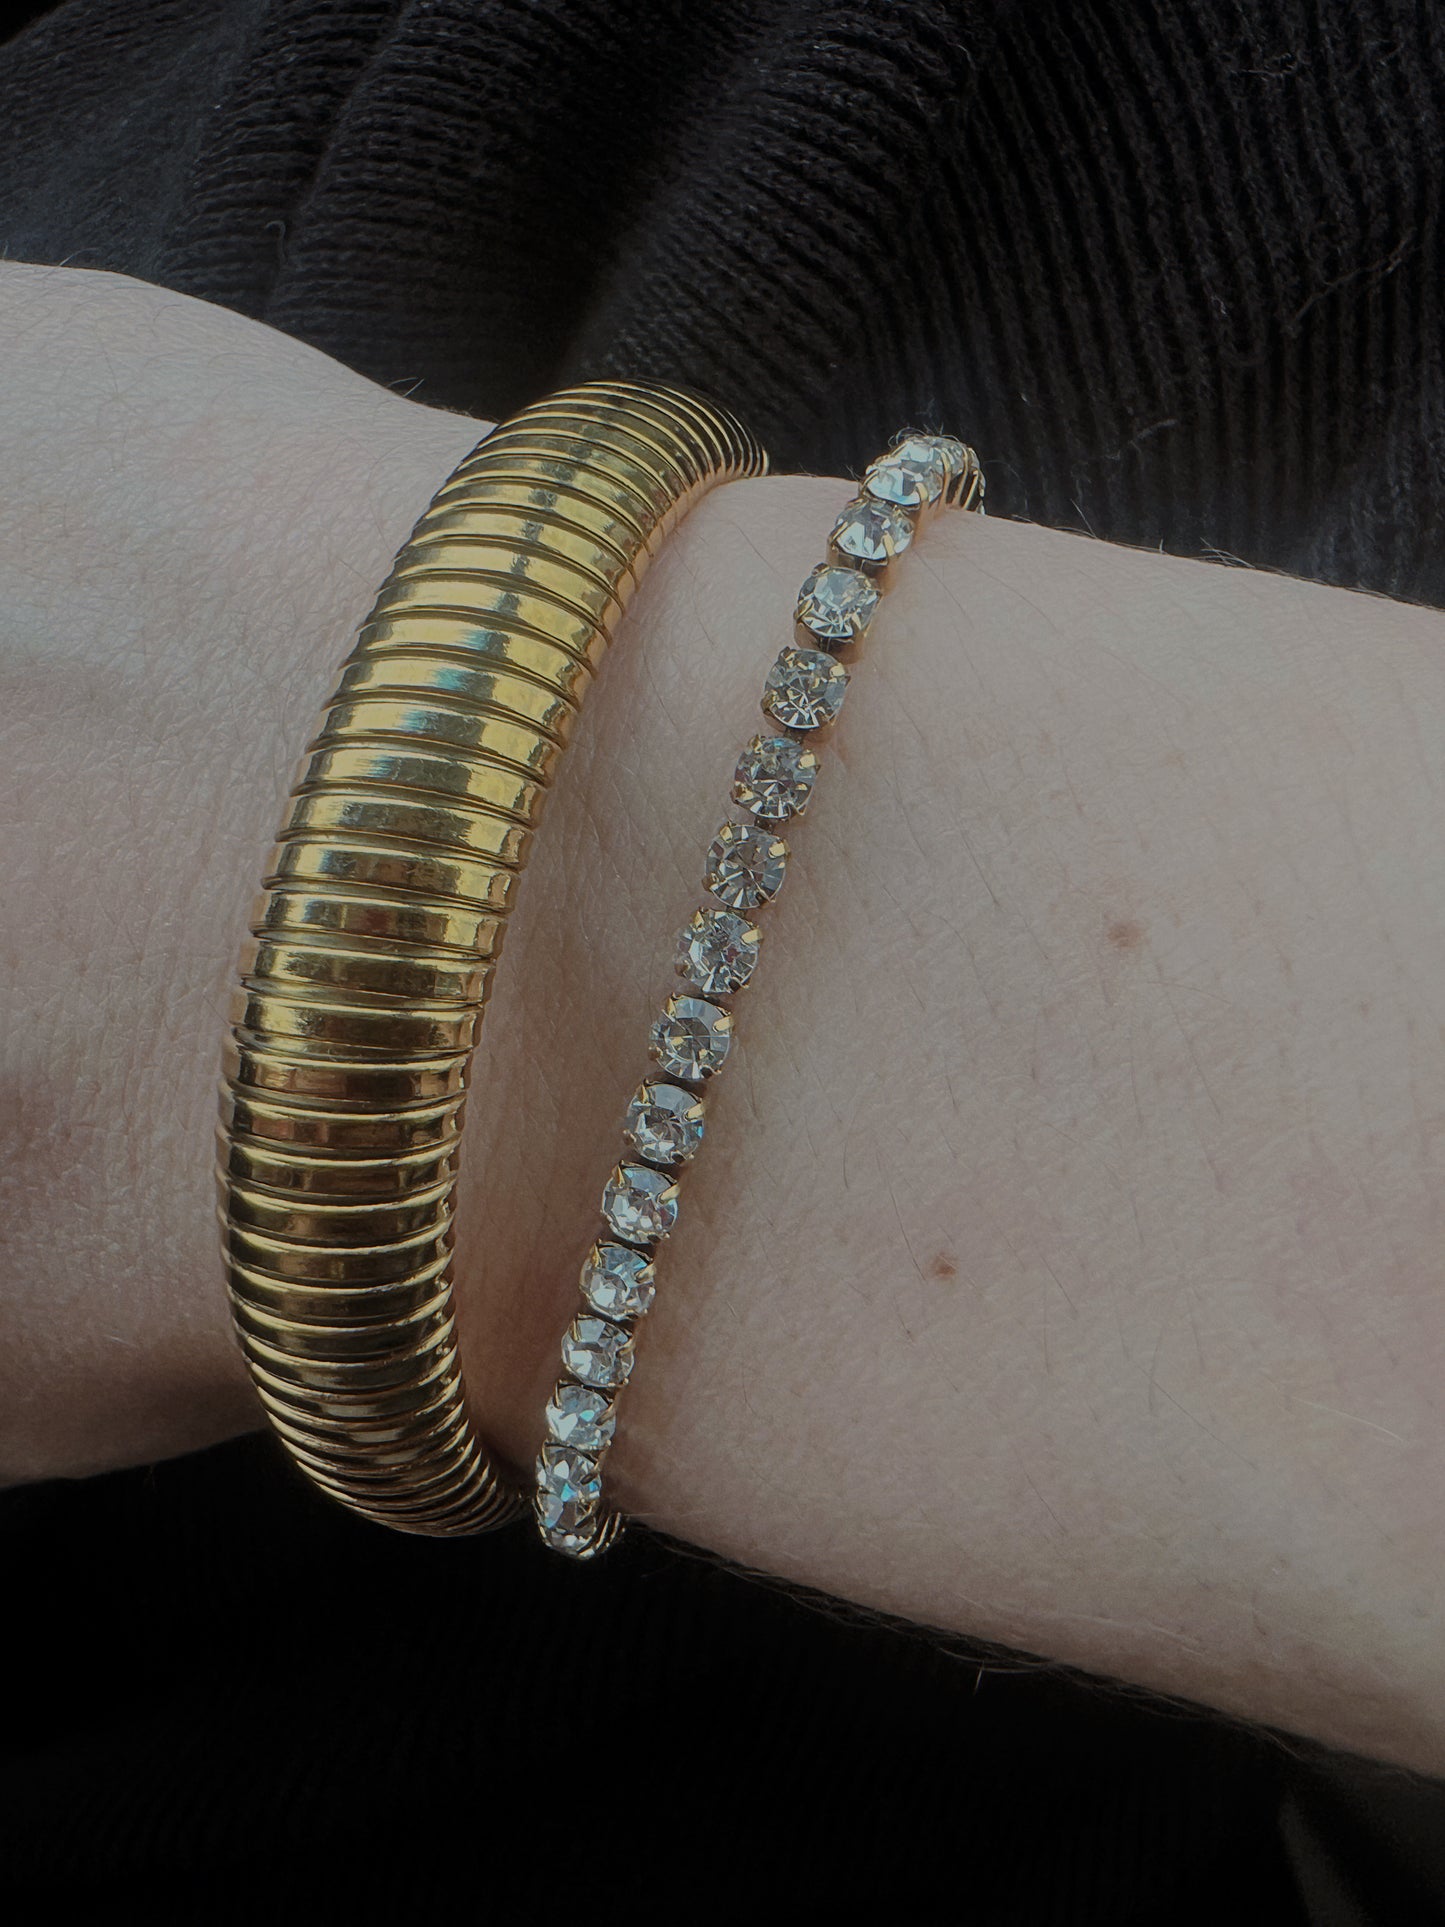 Adjustable tennis bracelet (gold and silver)